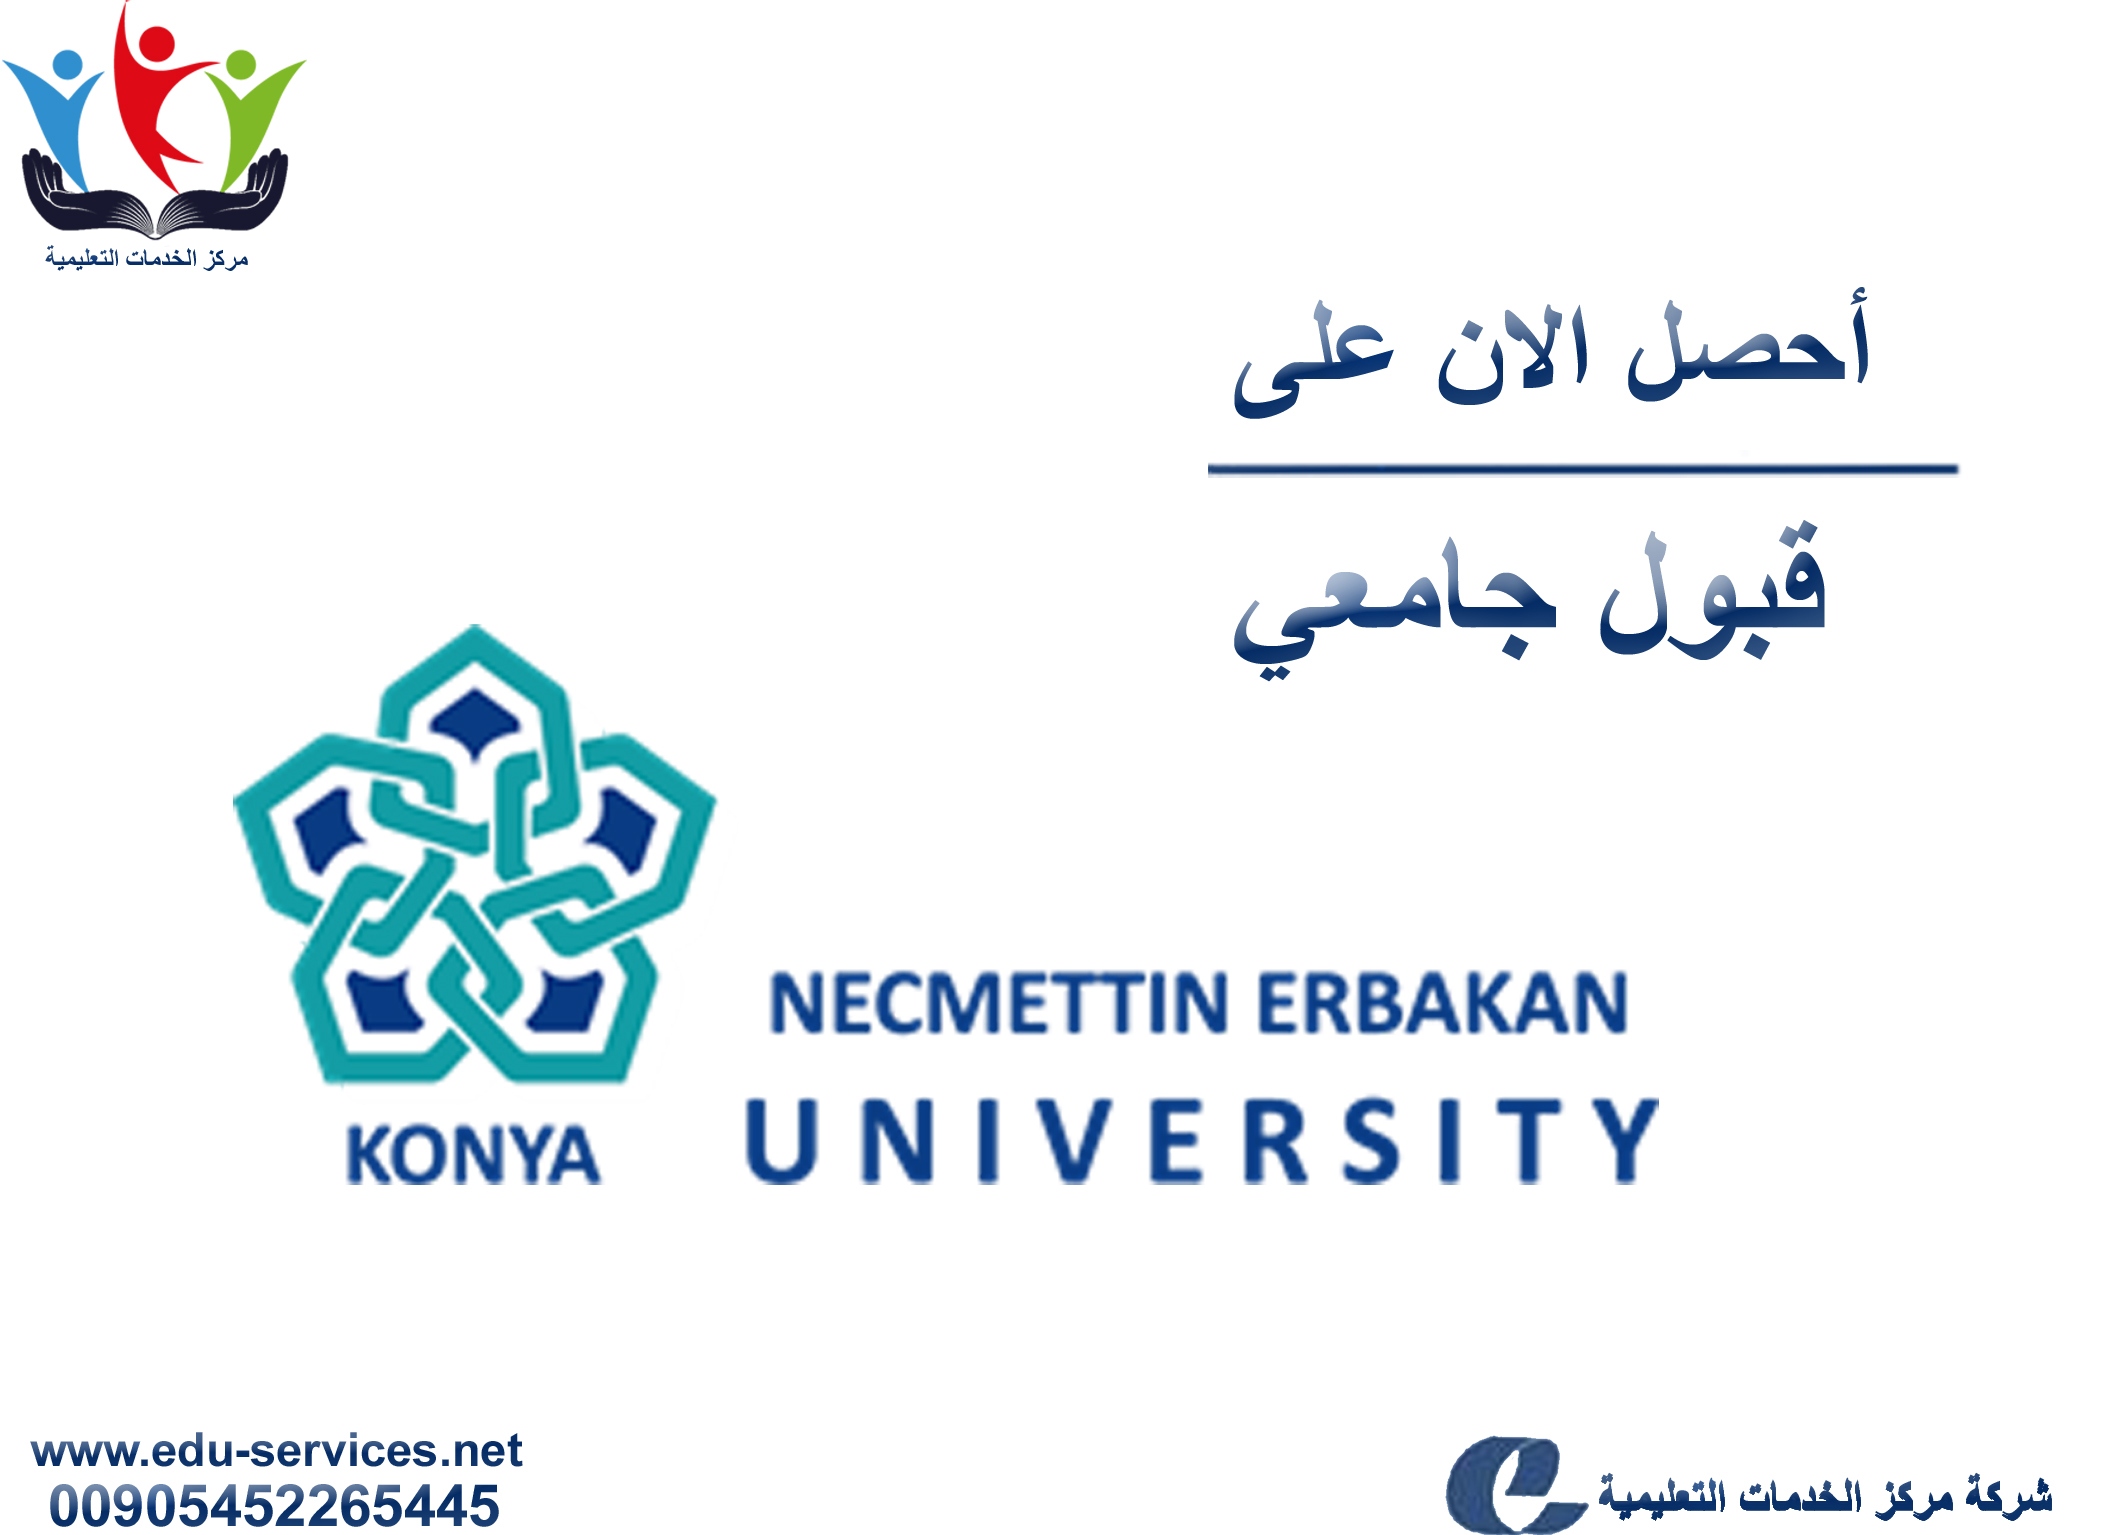 افتتاح التسجيل في جامعة نجم الدين أربكان للعام 2018-2019